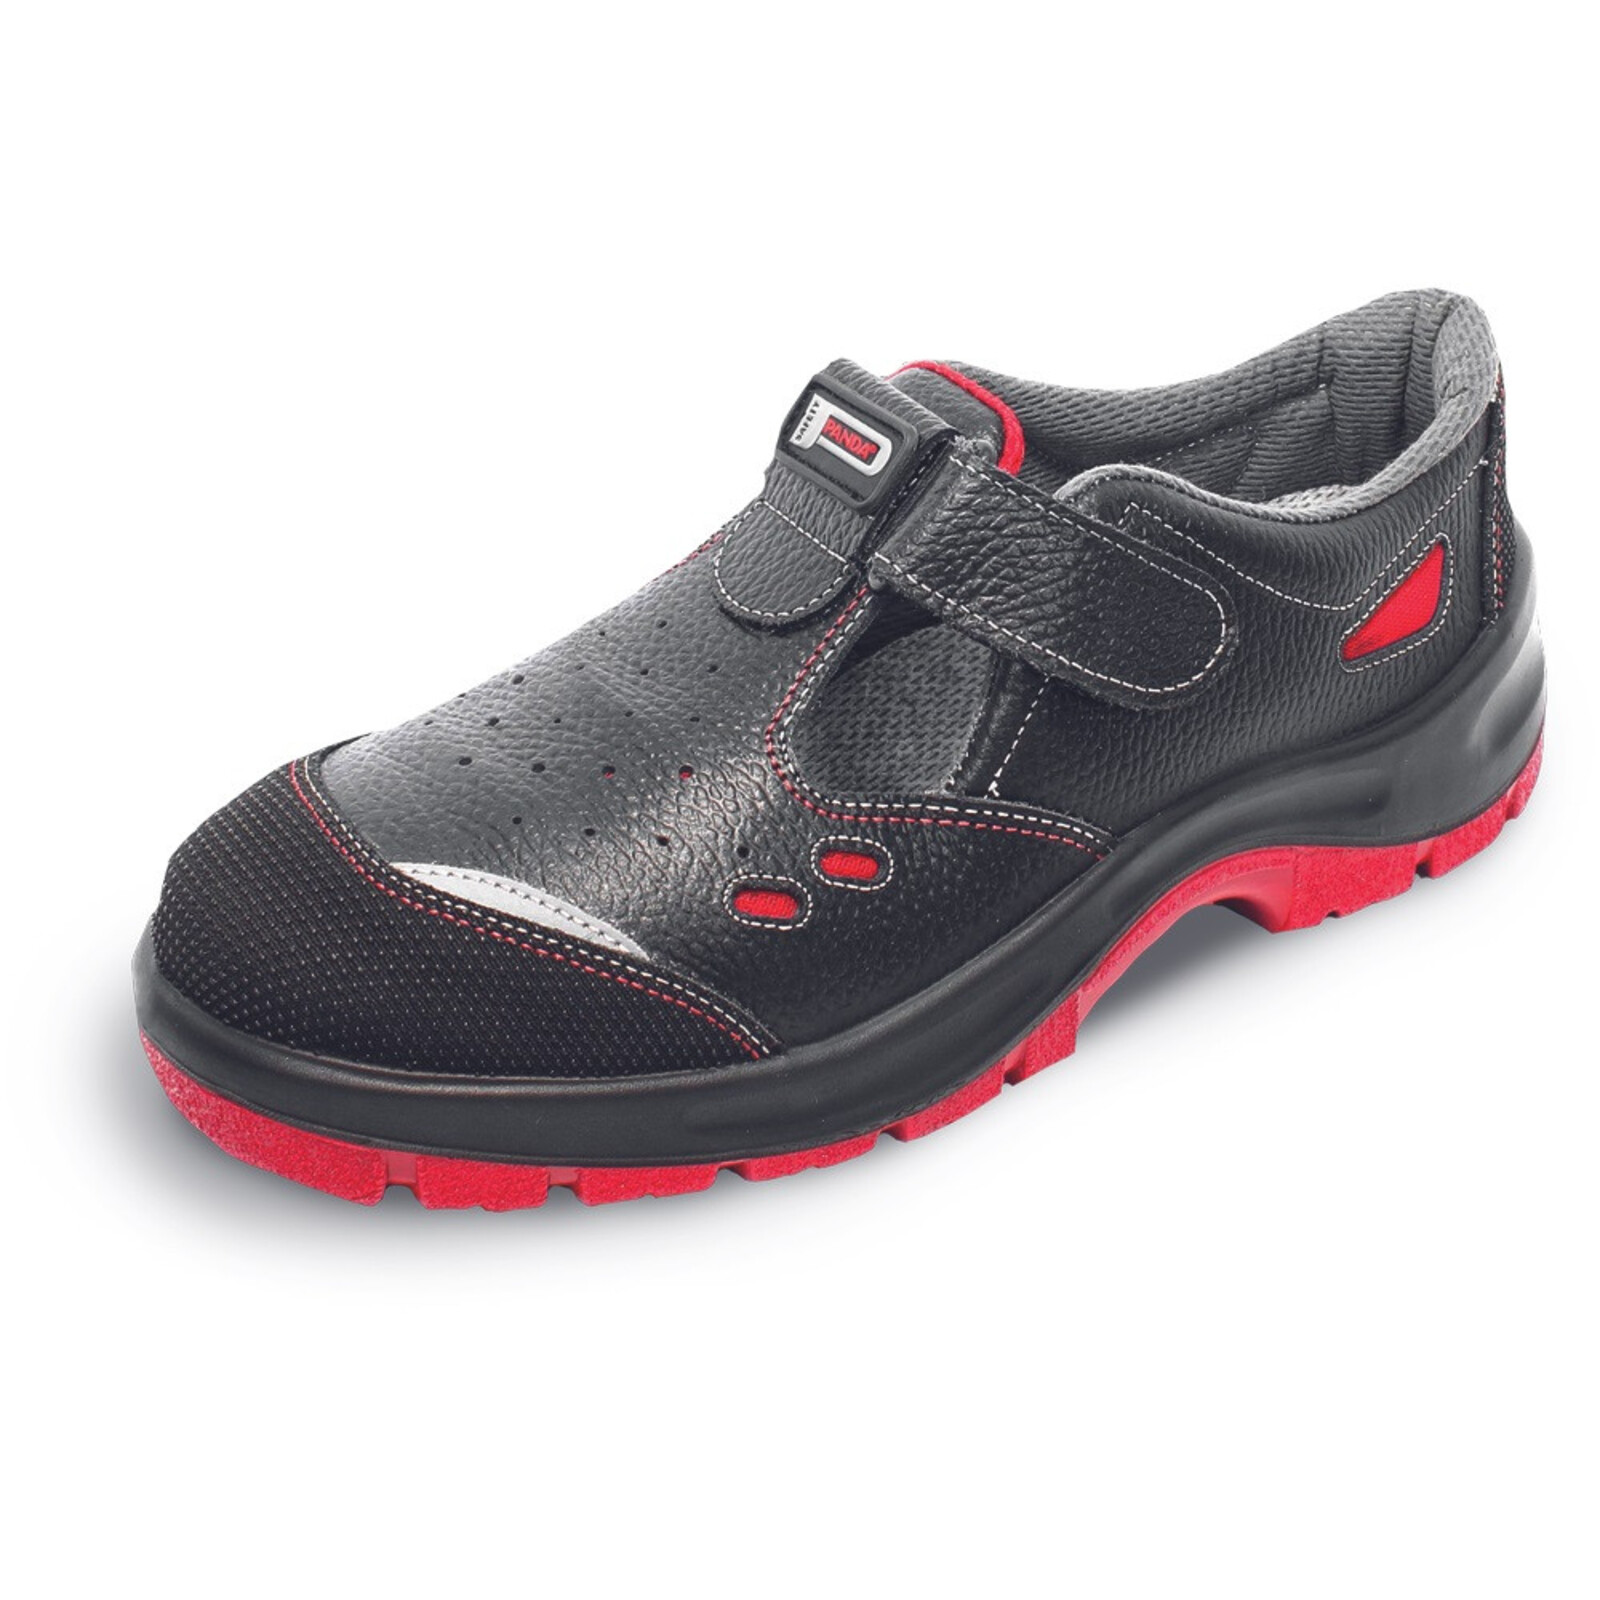 Bezpečnostné sandále Panda Strong Nuovo Topolino MF S1 SRC - veľkosť: 41, farba: čierna/červená